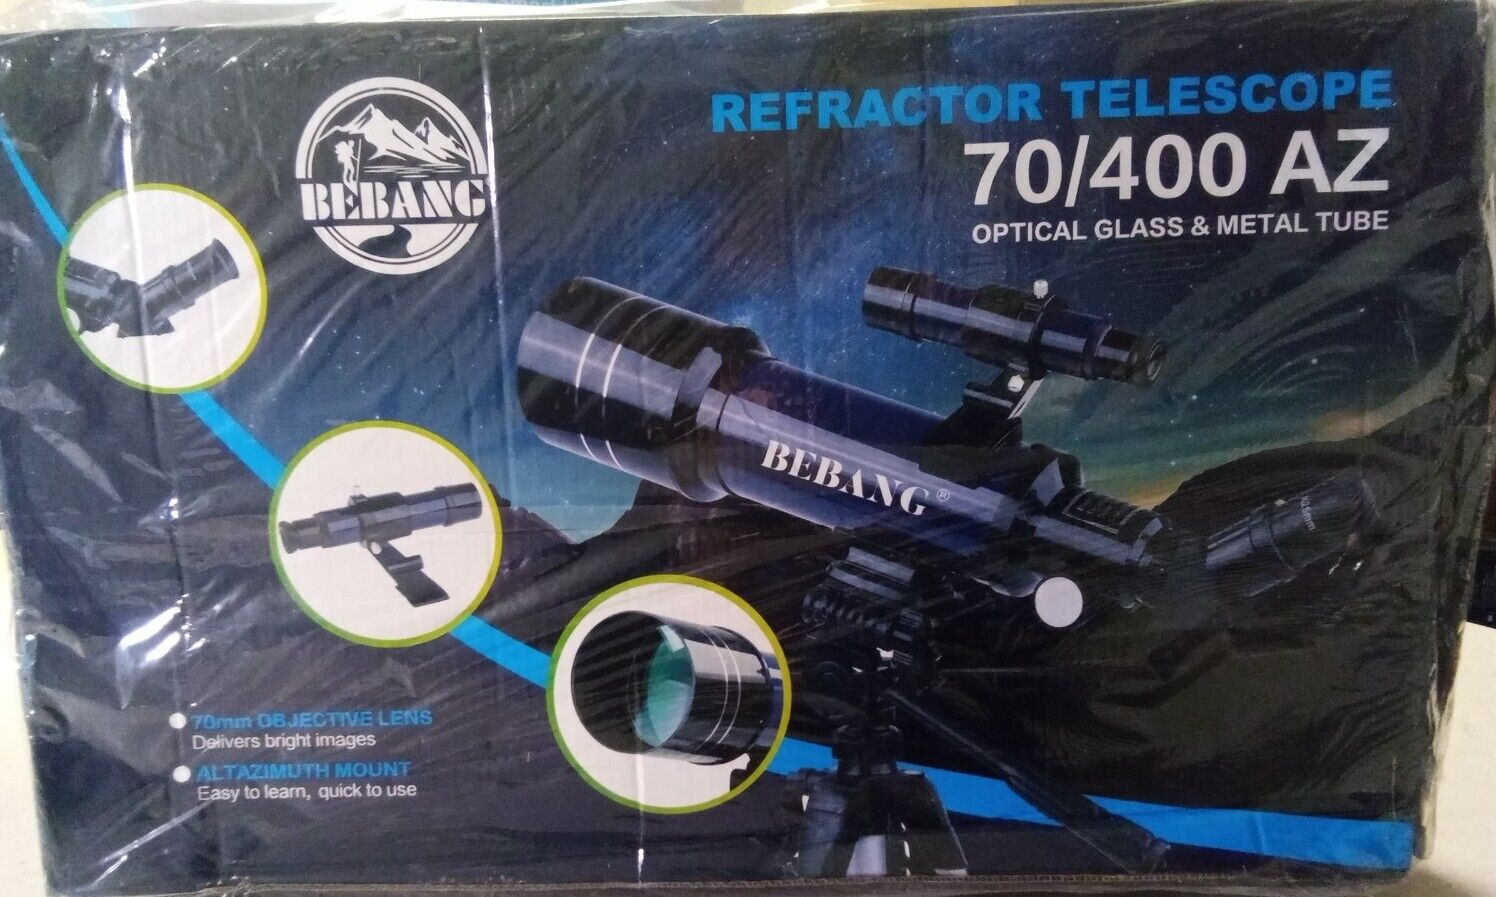 Bebang Refractor Telescope 70/400 AZ with tripod. Box slightly damaged 